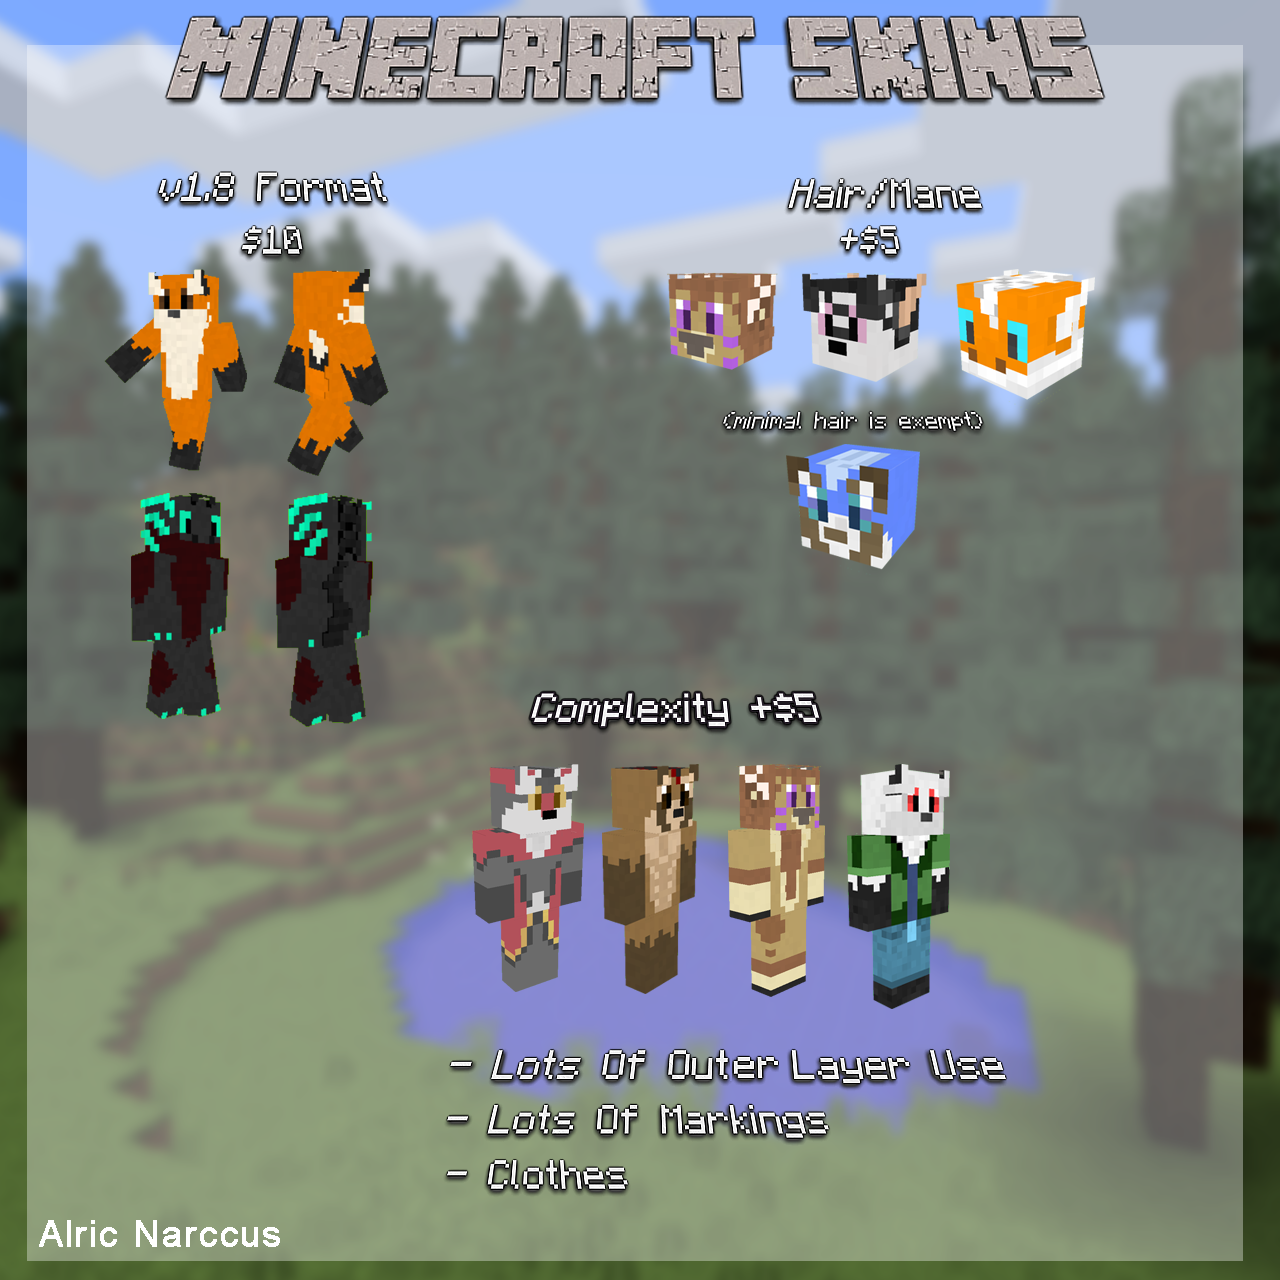 Minecraft Skins by DragonFeenix on DeviantArt